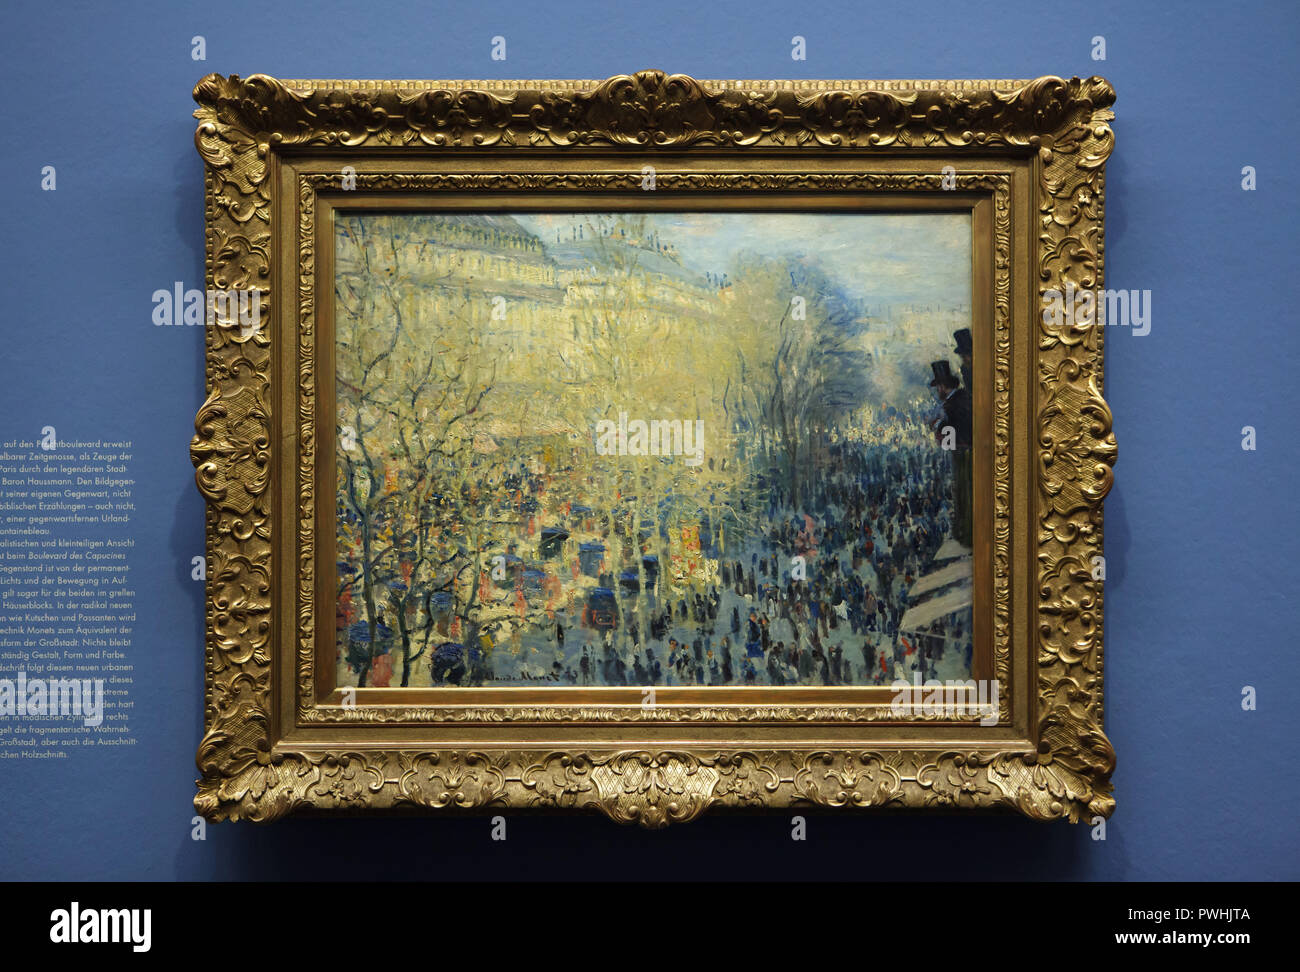 Malerei 'Boulevard des Capucines' (1873) des Französischen impressionistischen Malers Claude Monet auf Anzeige an seine retrospektive Ausstellung in der Albertina in Wien, Österreich. Die Ausstellung, die der Gründer der Französischen impressionistischen Malerei wird bis zum 6. Januar 2019 gewidmet. Stockfoto